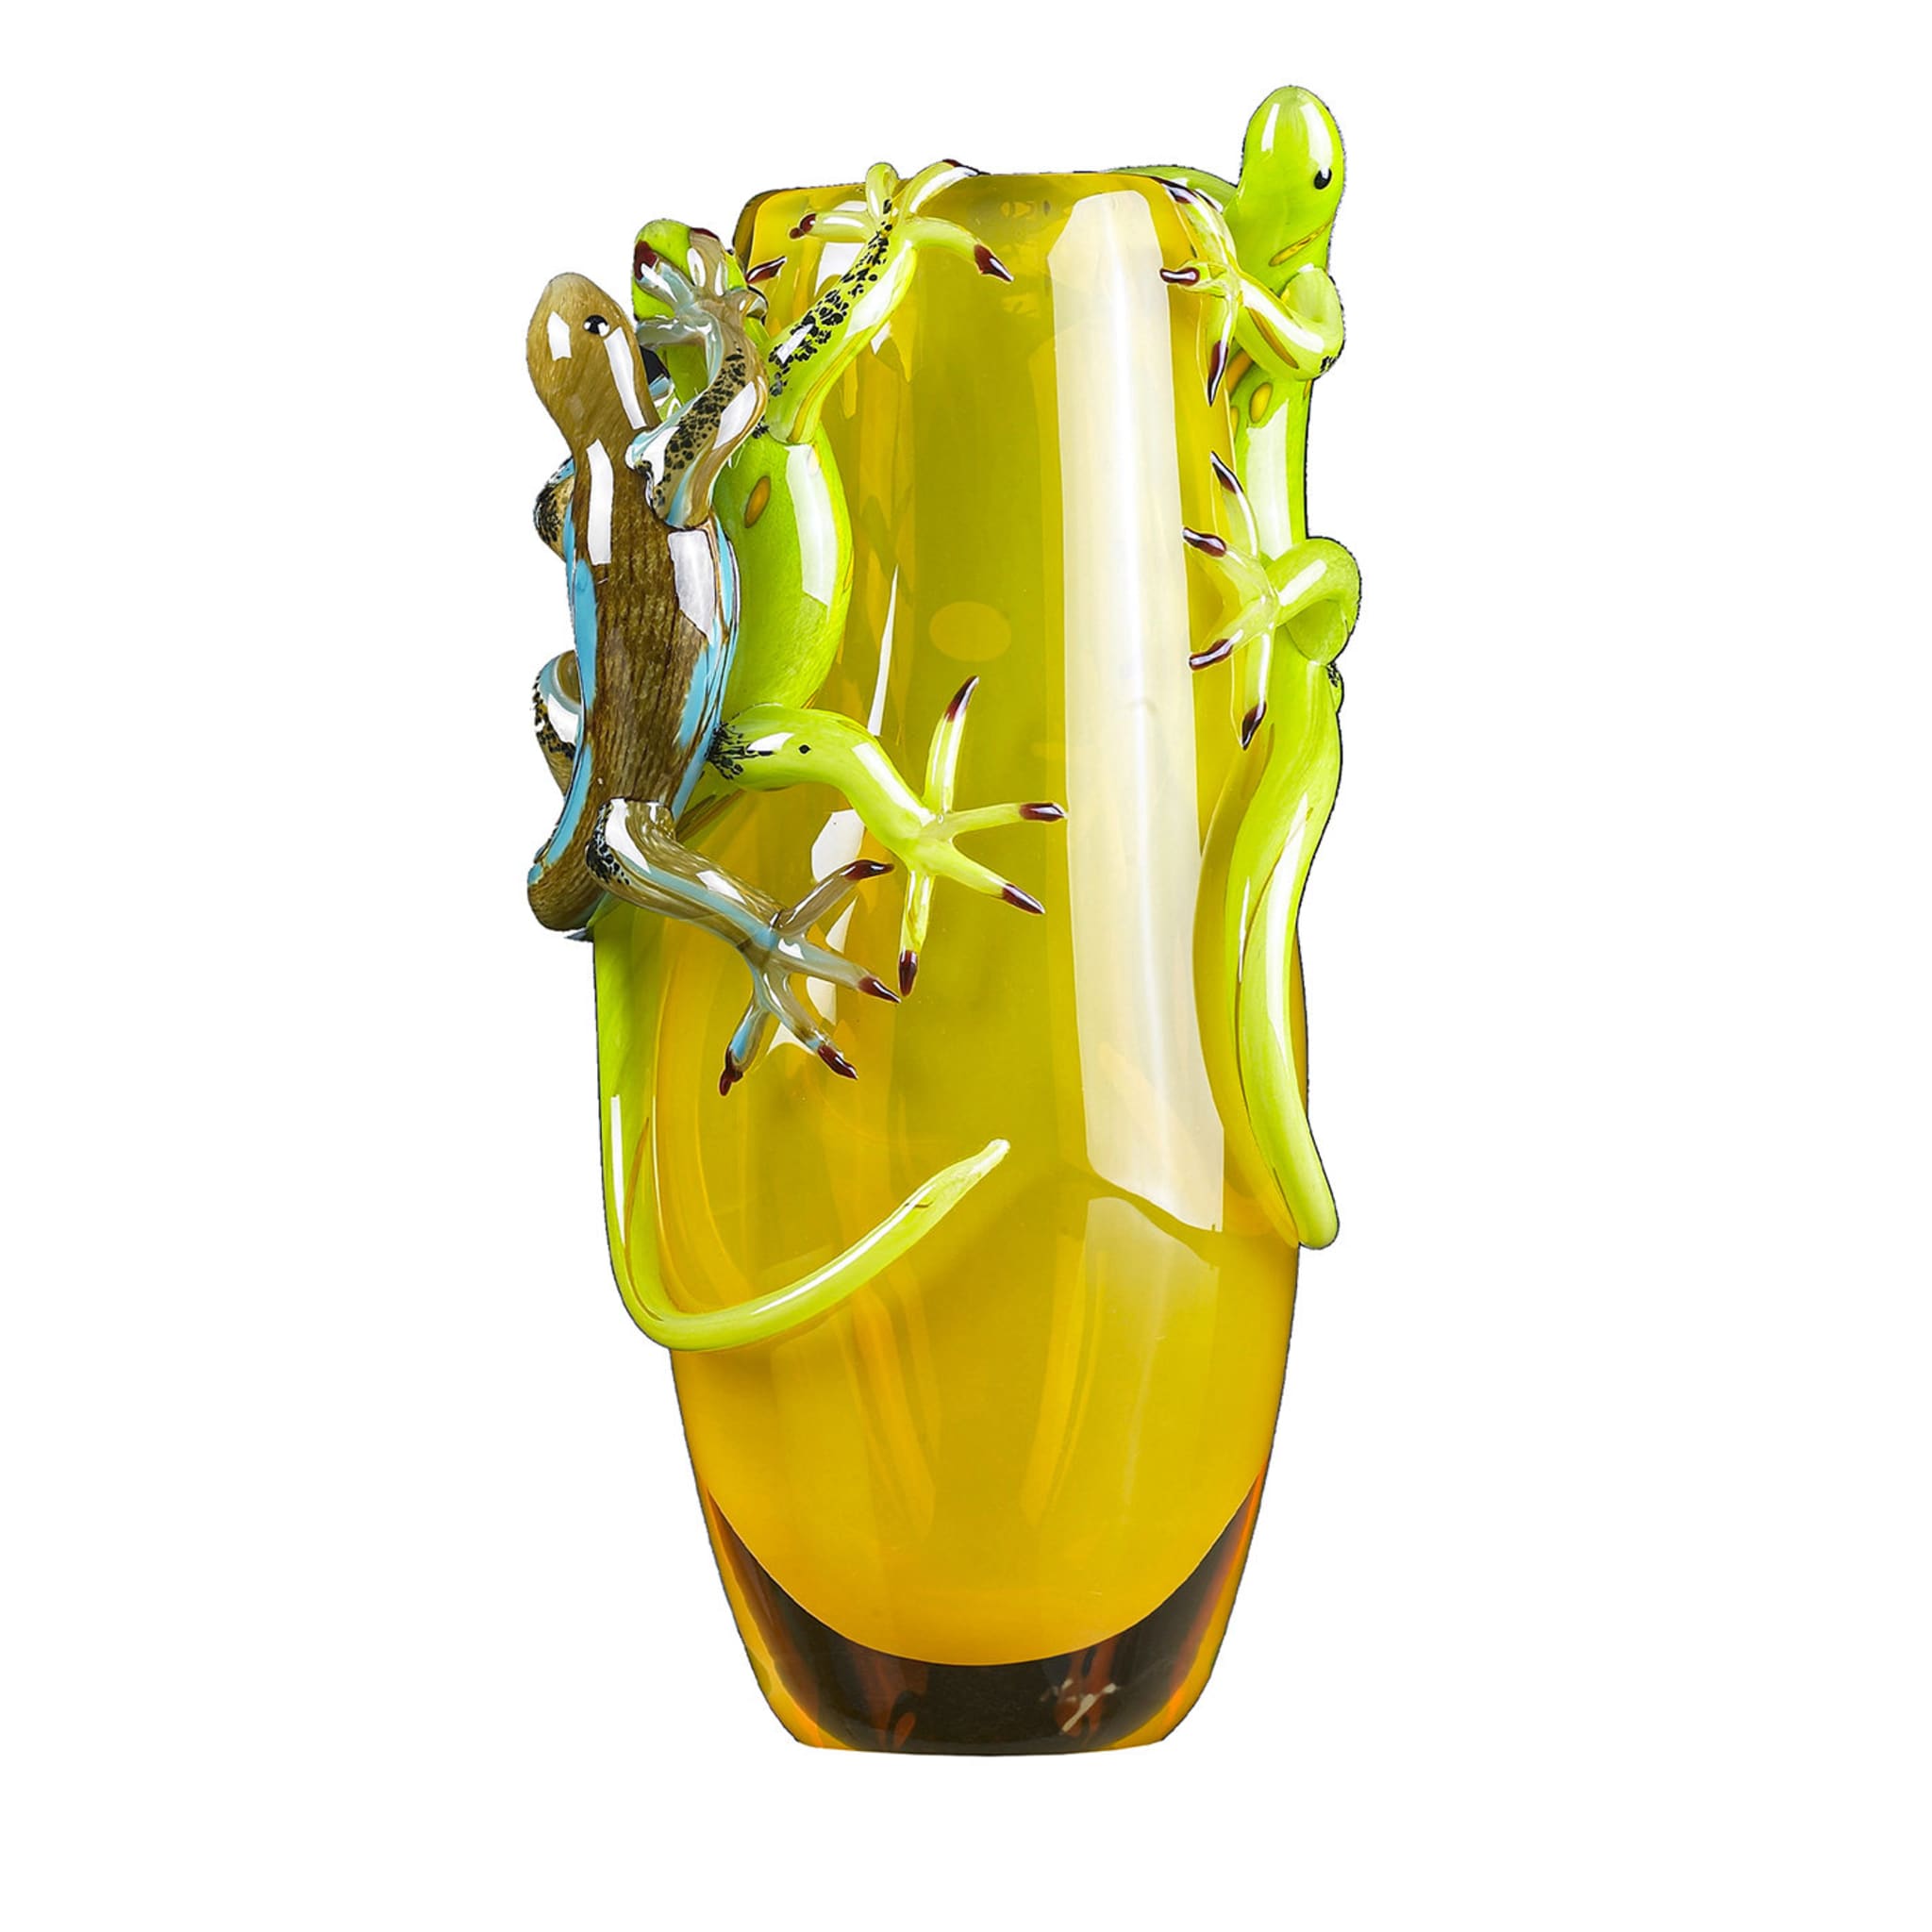 Vaso giallo con 3 gechi - Vista principale